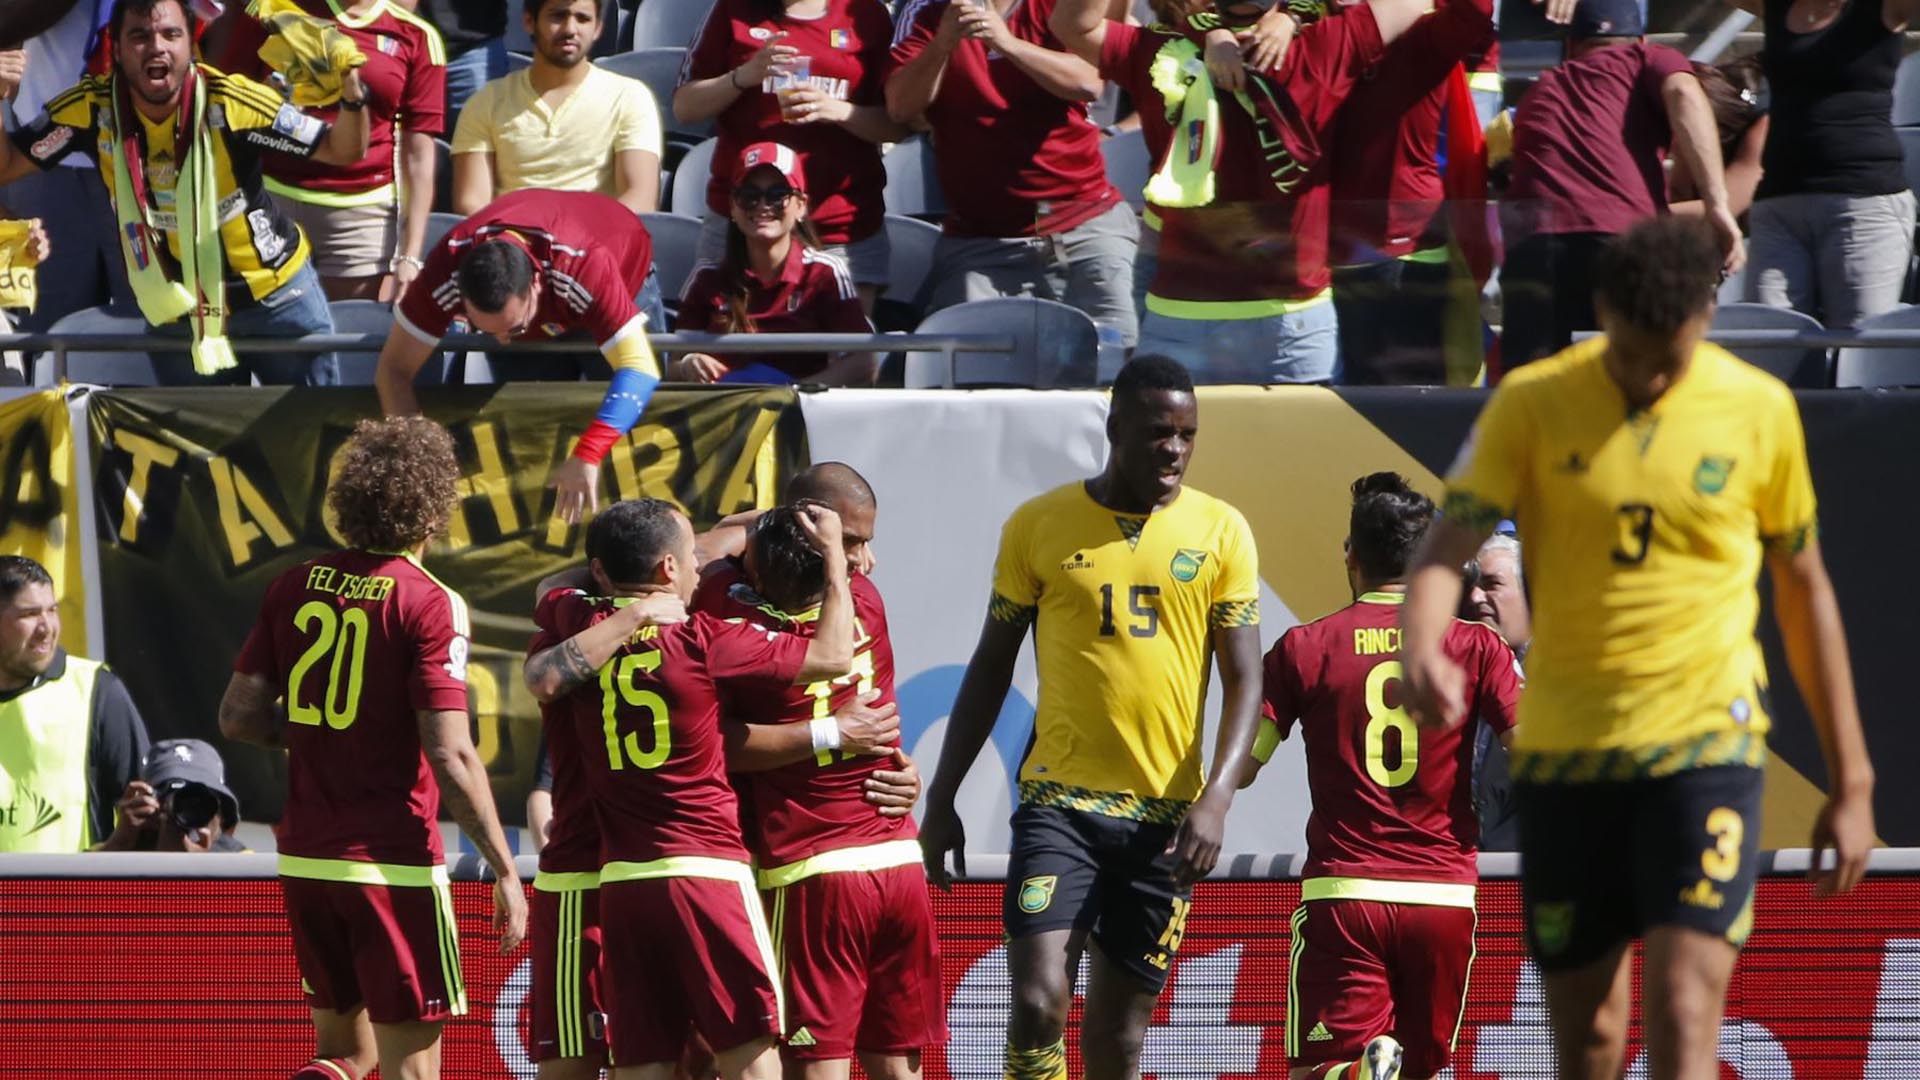 Los equipos sudamericanos consiguieron los mejores resultados en la jornada inaugural que los perfila como favoritos para ganar copa